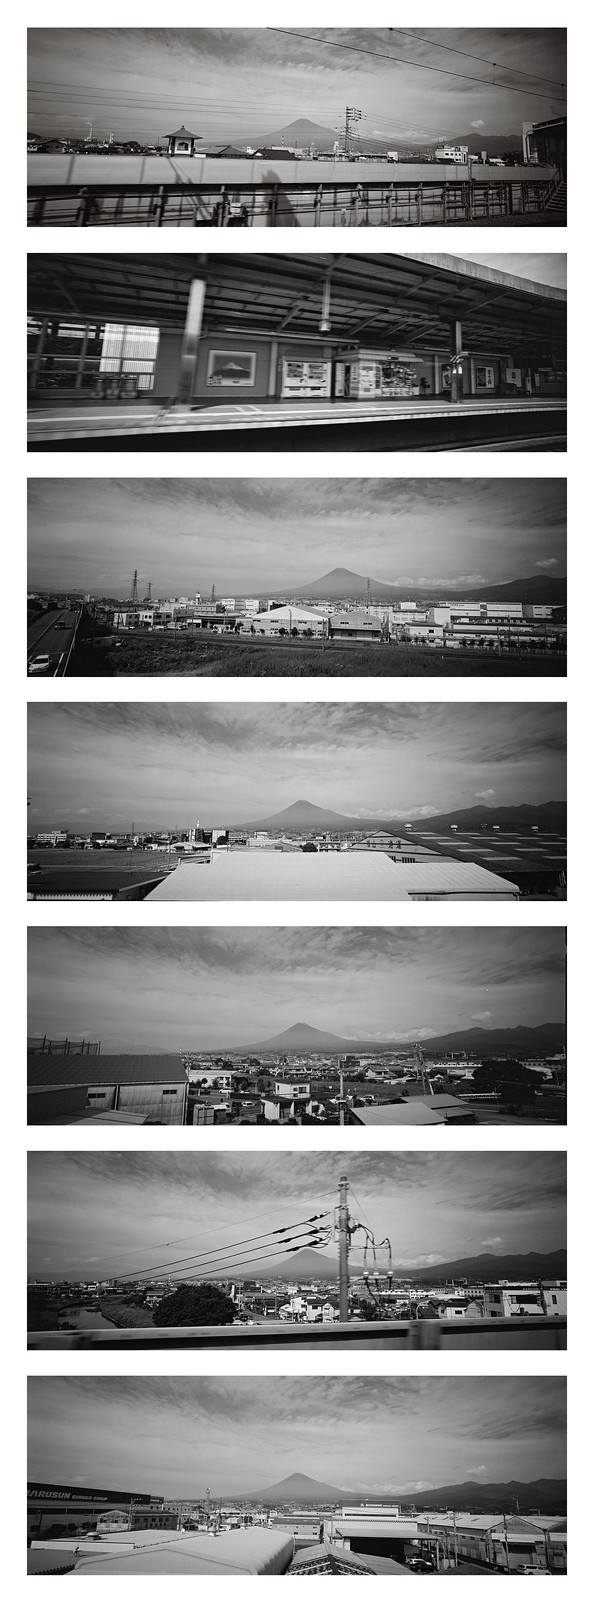 6 Views of Mount Fuji